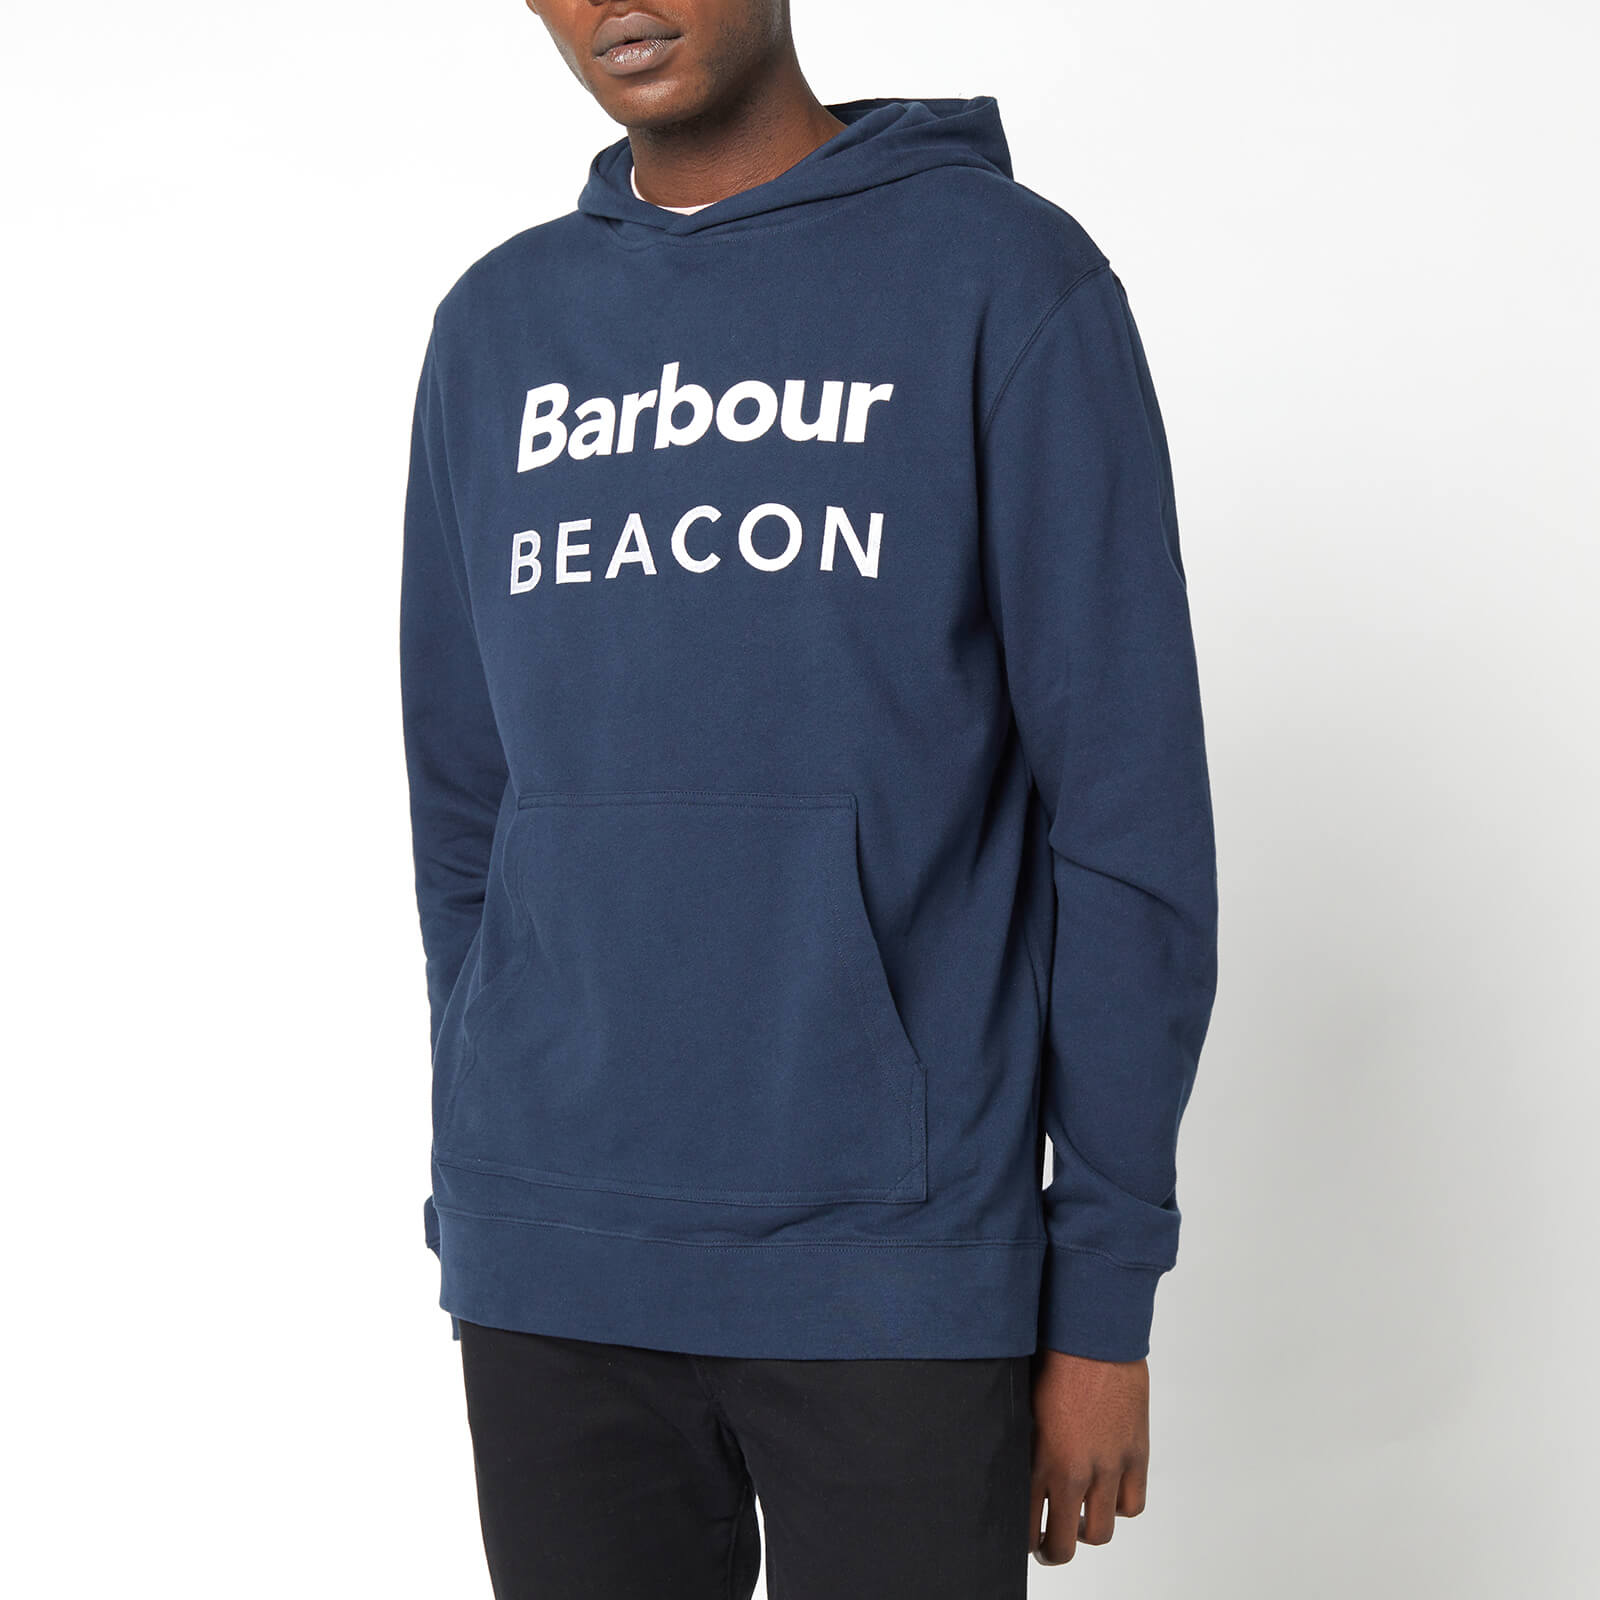 Barbour Beacon Men's Bankside Hoodie - Navy - S